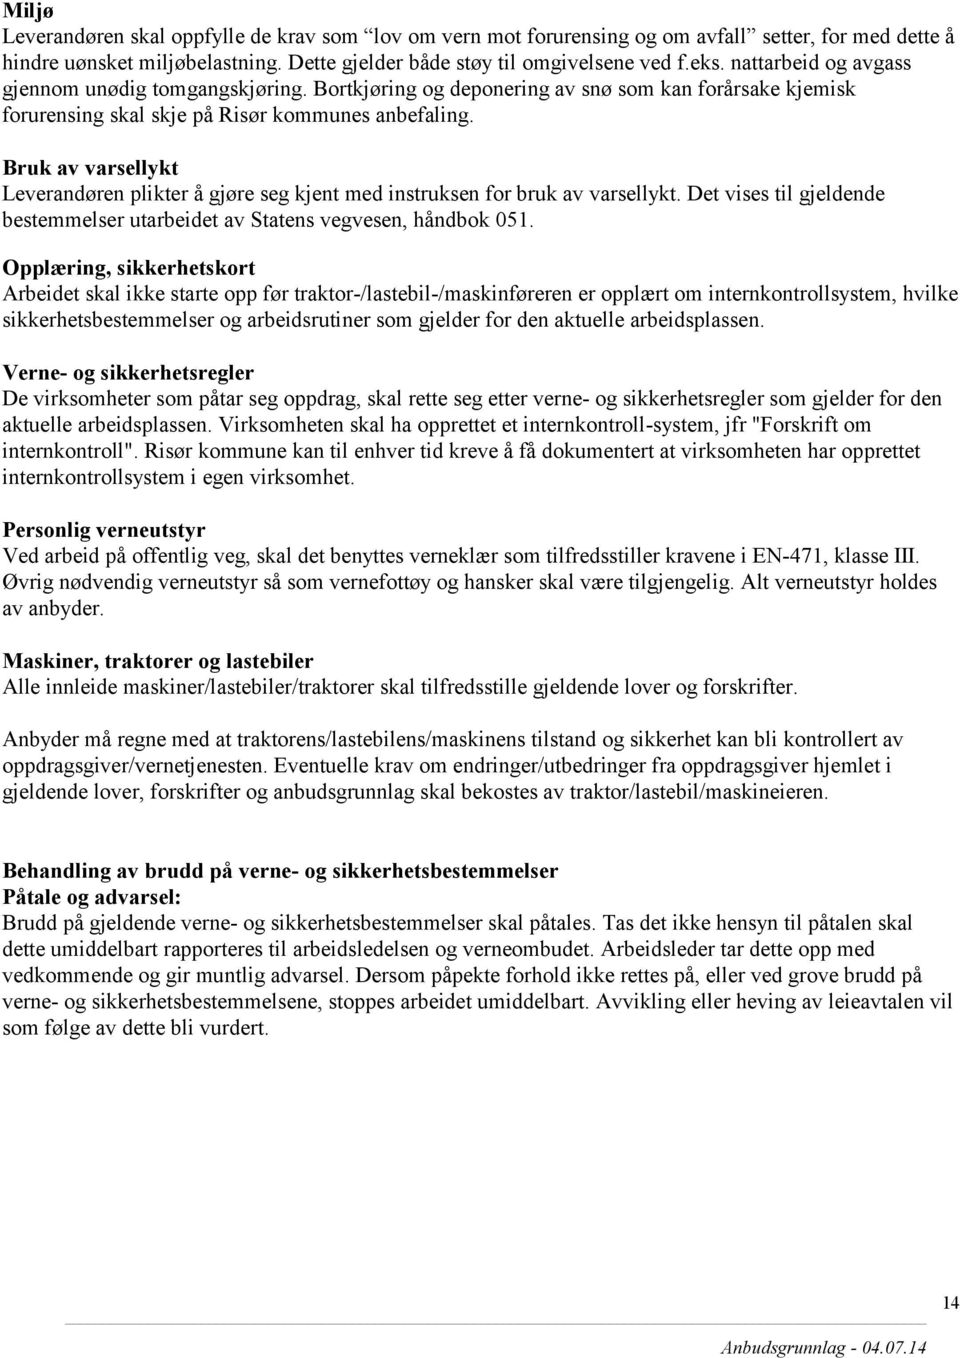 Bruk av varsellykt Leverandøren plikter å gjøre seg kjent med instruksen for bruk av varsellykt. Det vises til gjeldende bestemmelser utarbeidet av Statens vegvesen, håndbok 051.